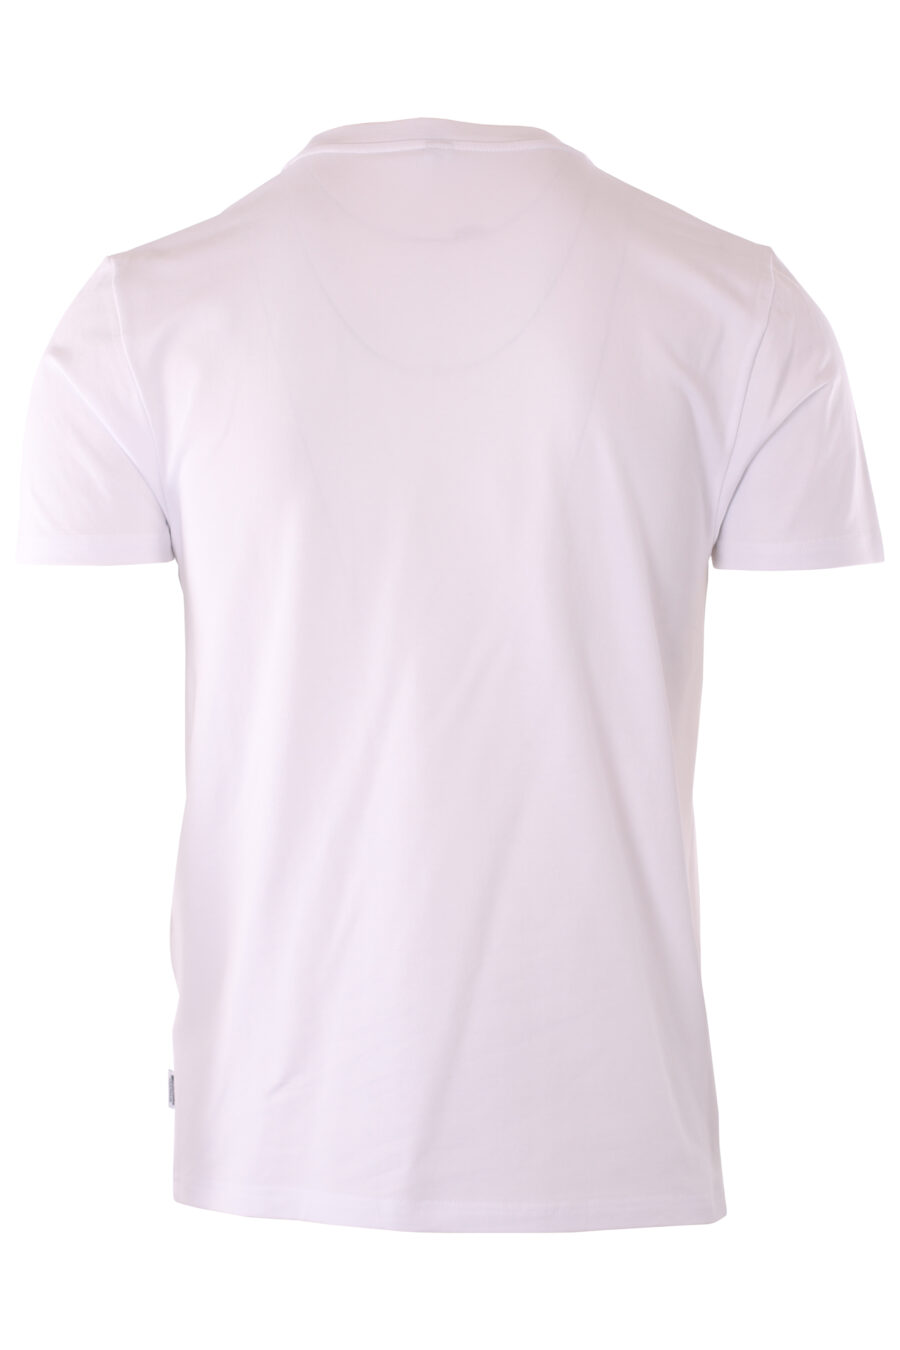 T-shirt blanc avec le logo d'un petit ours "underbear" - IMG 6608